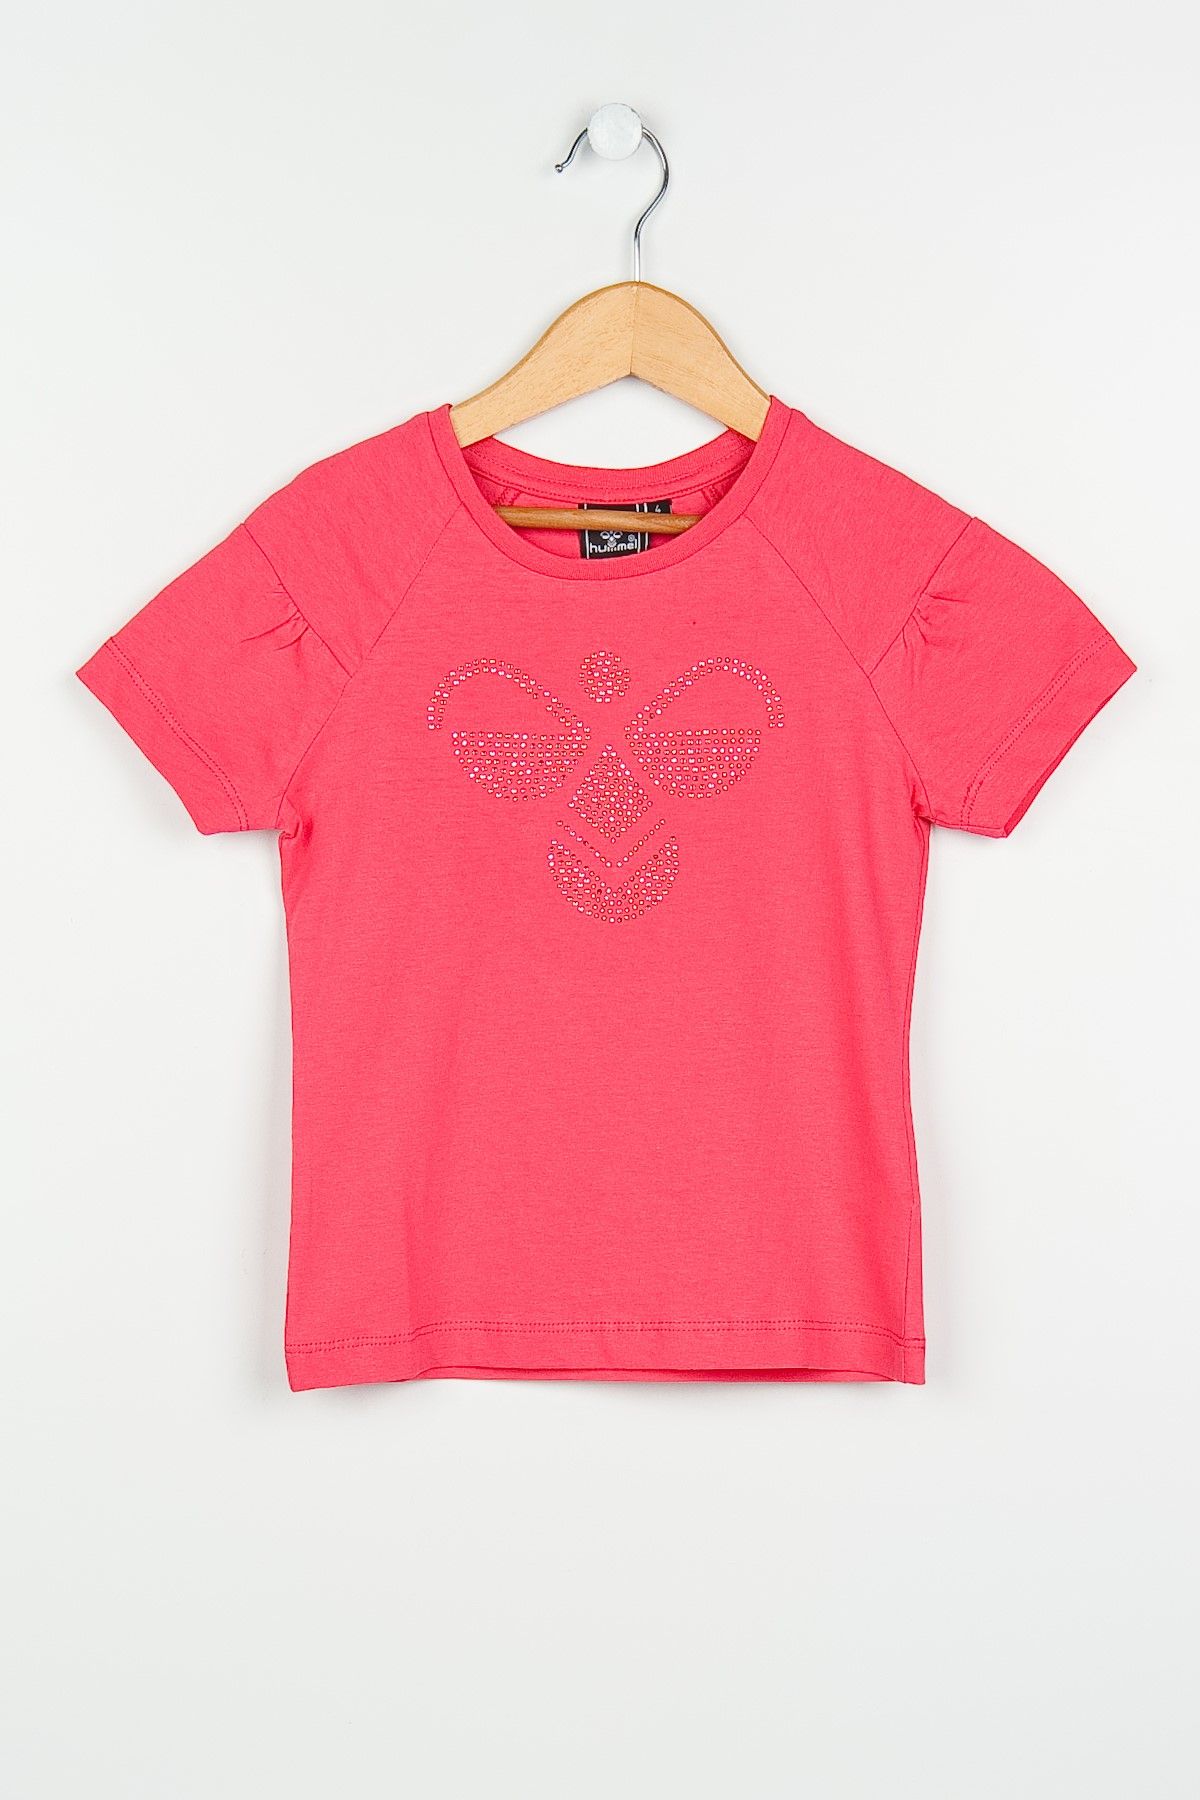 hummel Pembe Kız Çocuk T-Shirt 09216-4049